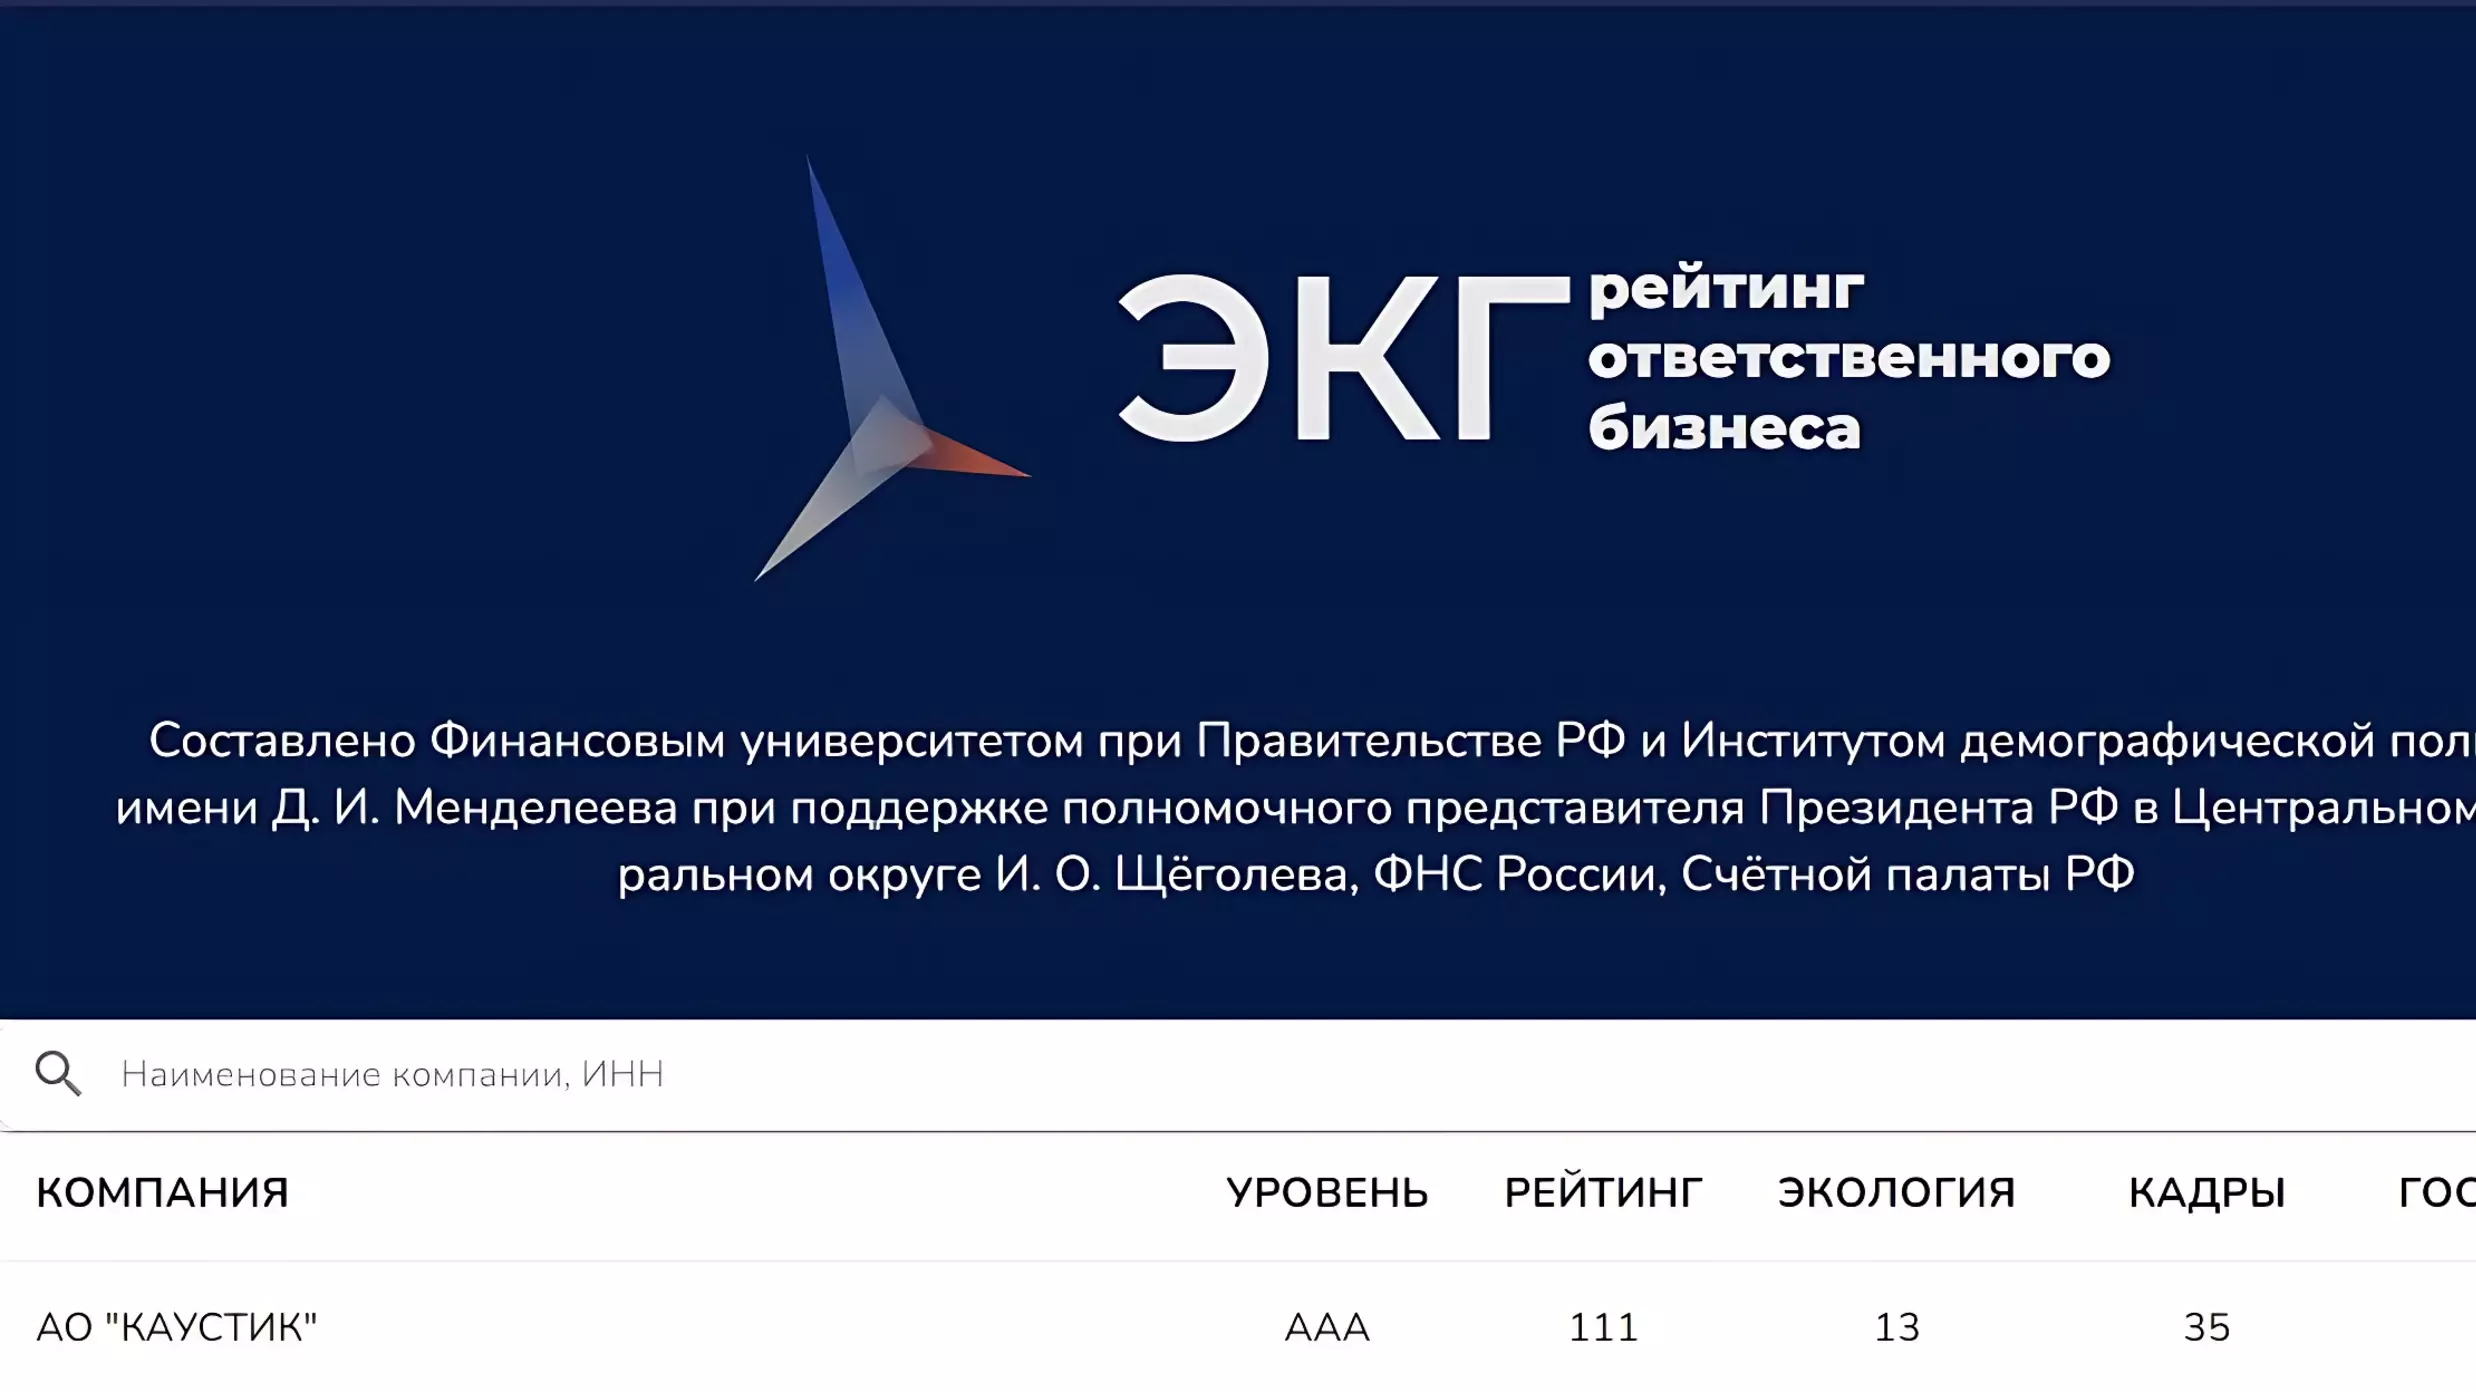 Волгоградский «КАУСТИК» — лидер первого российского рейтинга ответственного бизнеса